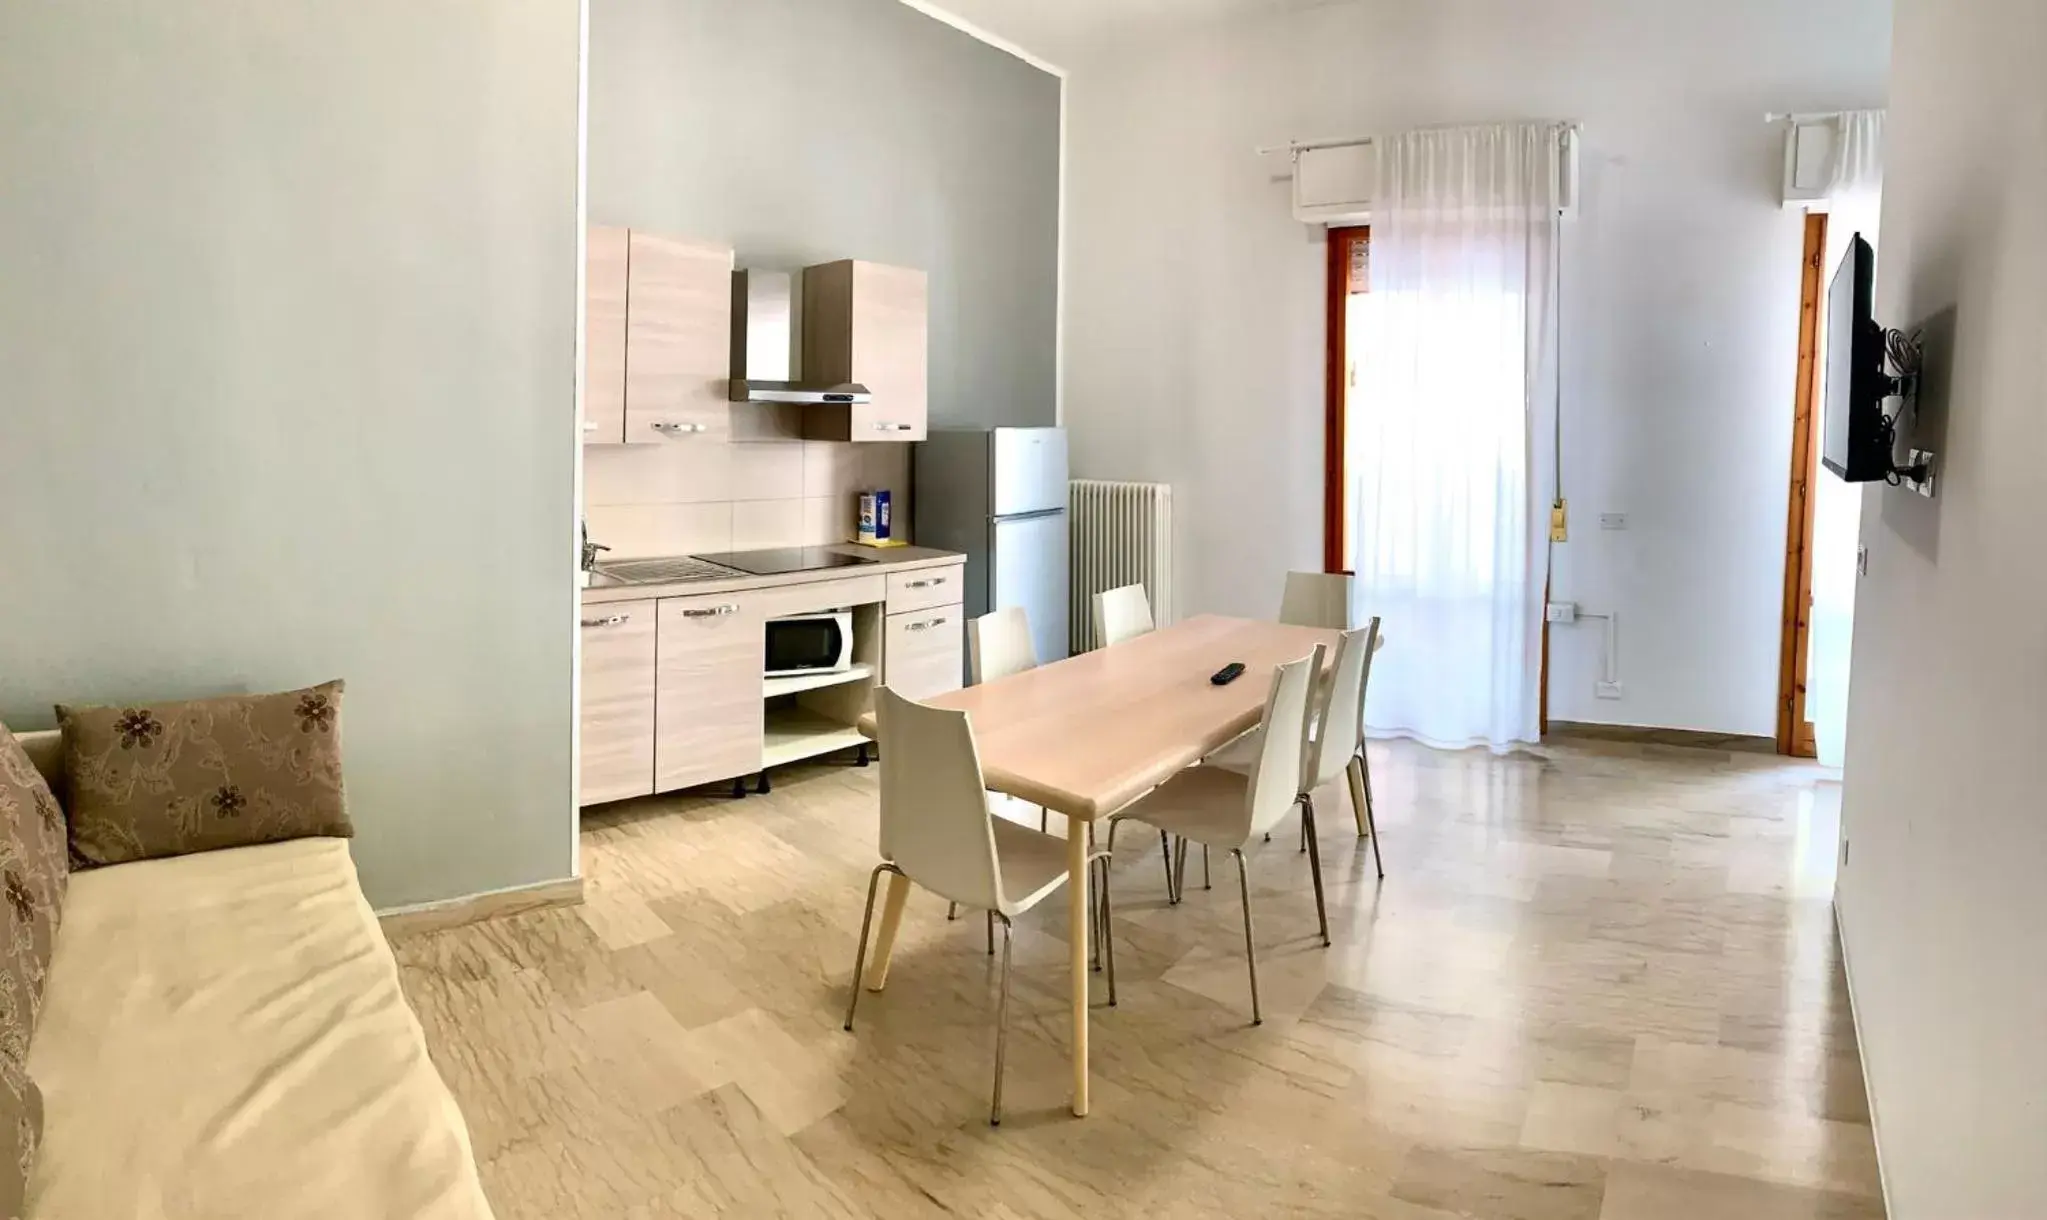 Dining Area in Battigia - Appartamenti Vacanze